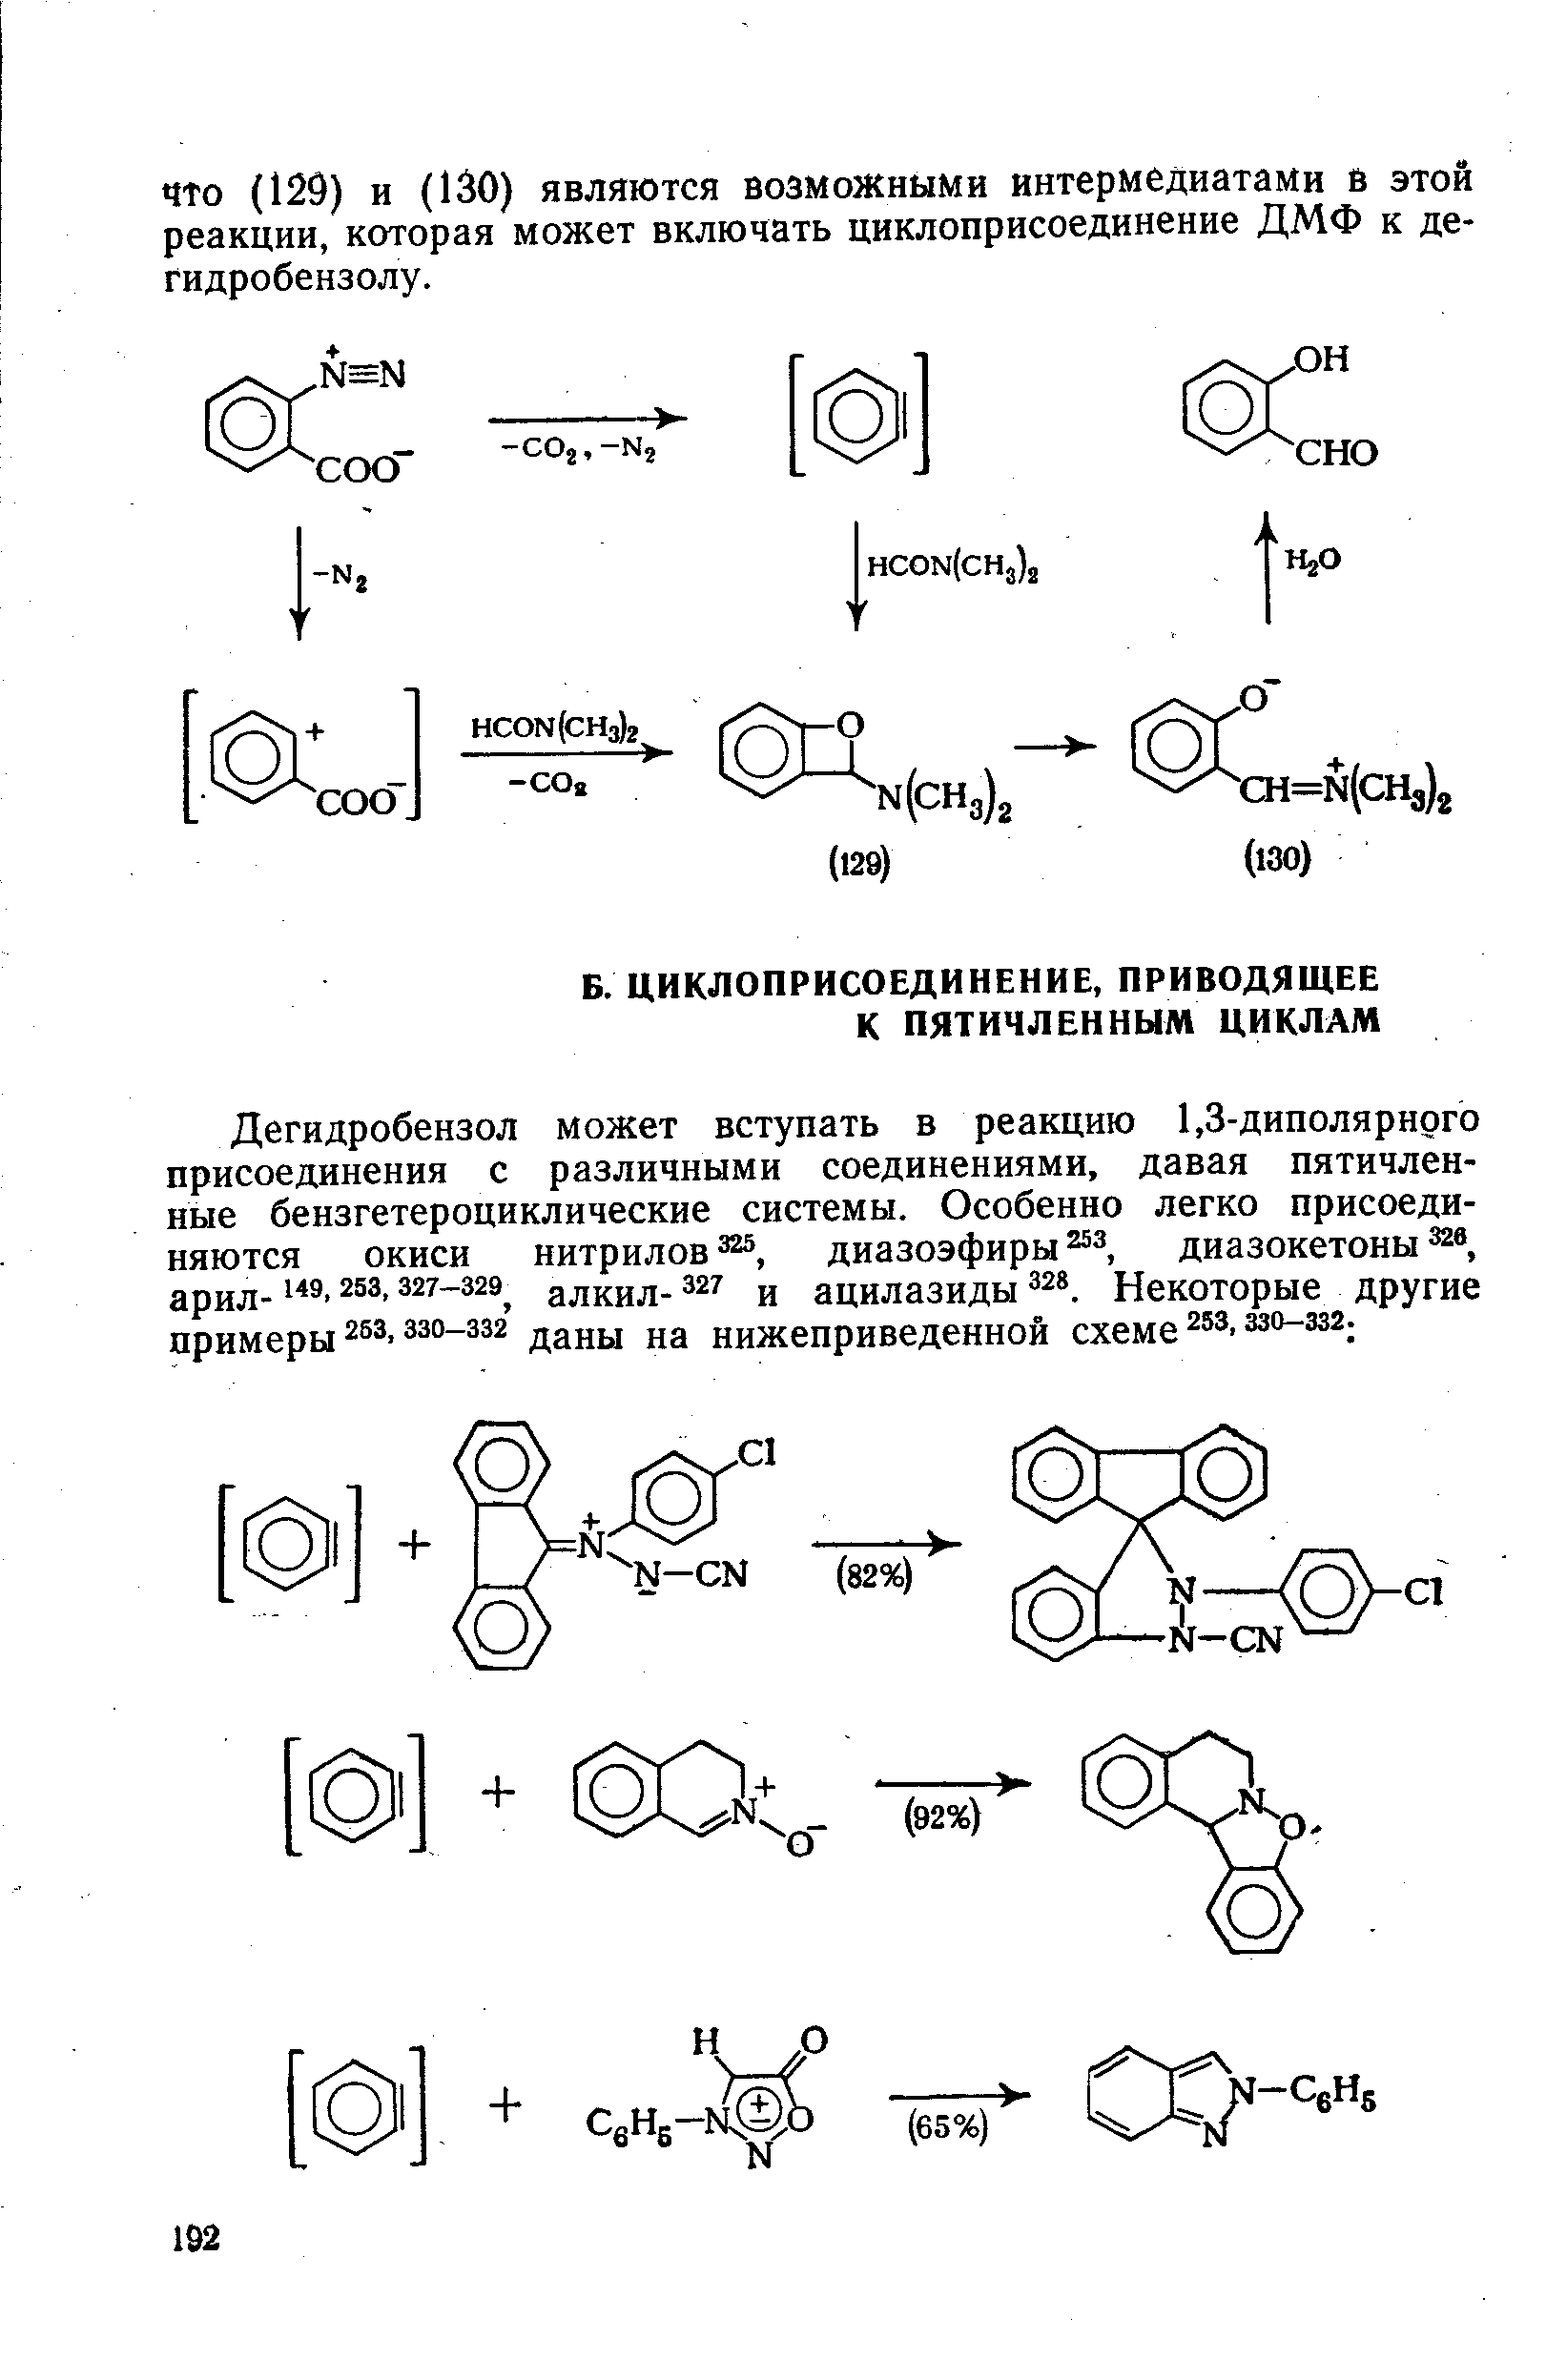 Дегидробензол может вступать в реакцию 1,3-диполярного присоединения с различными соединениями, давая пятичленные бензгетероциклические системы. Особенно легко присоединяются окиси нитрилов диазоэфиры диазокетоны арил- 327-329 алкил- 327 и ацилазиды Некоторые другие примеры 253. 330-332 даны на нижеприведенной схеме ззо-зза.